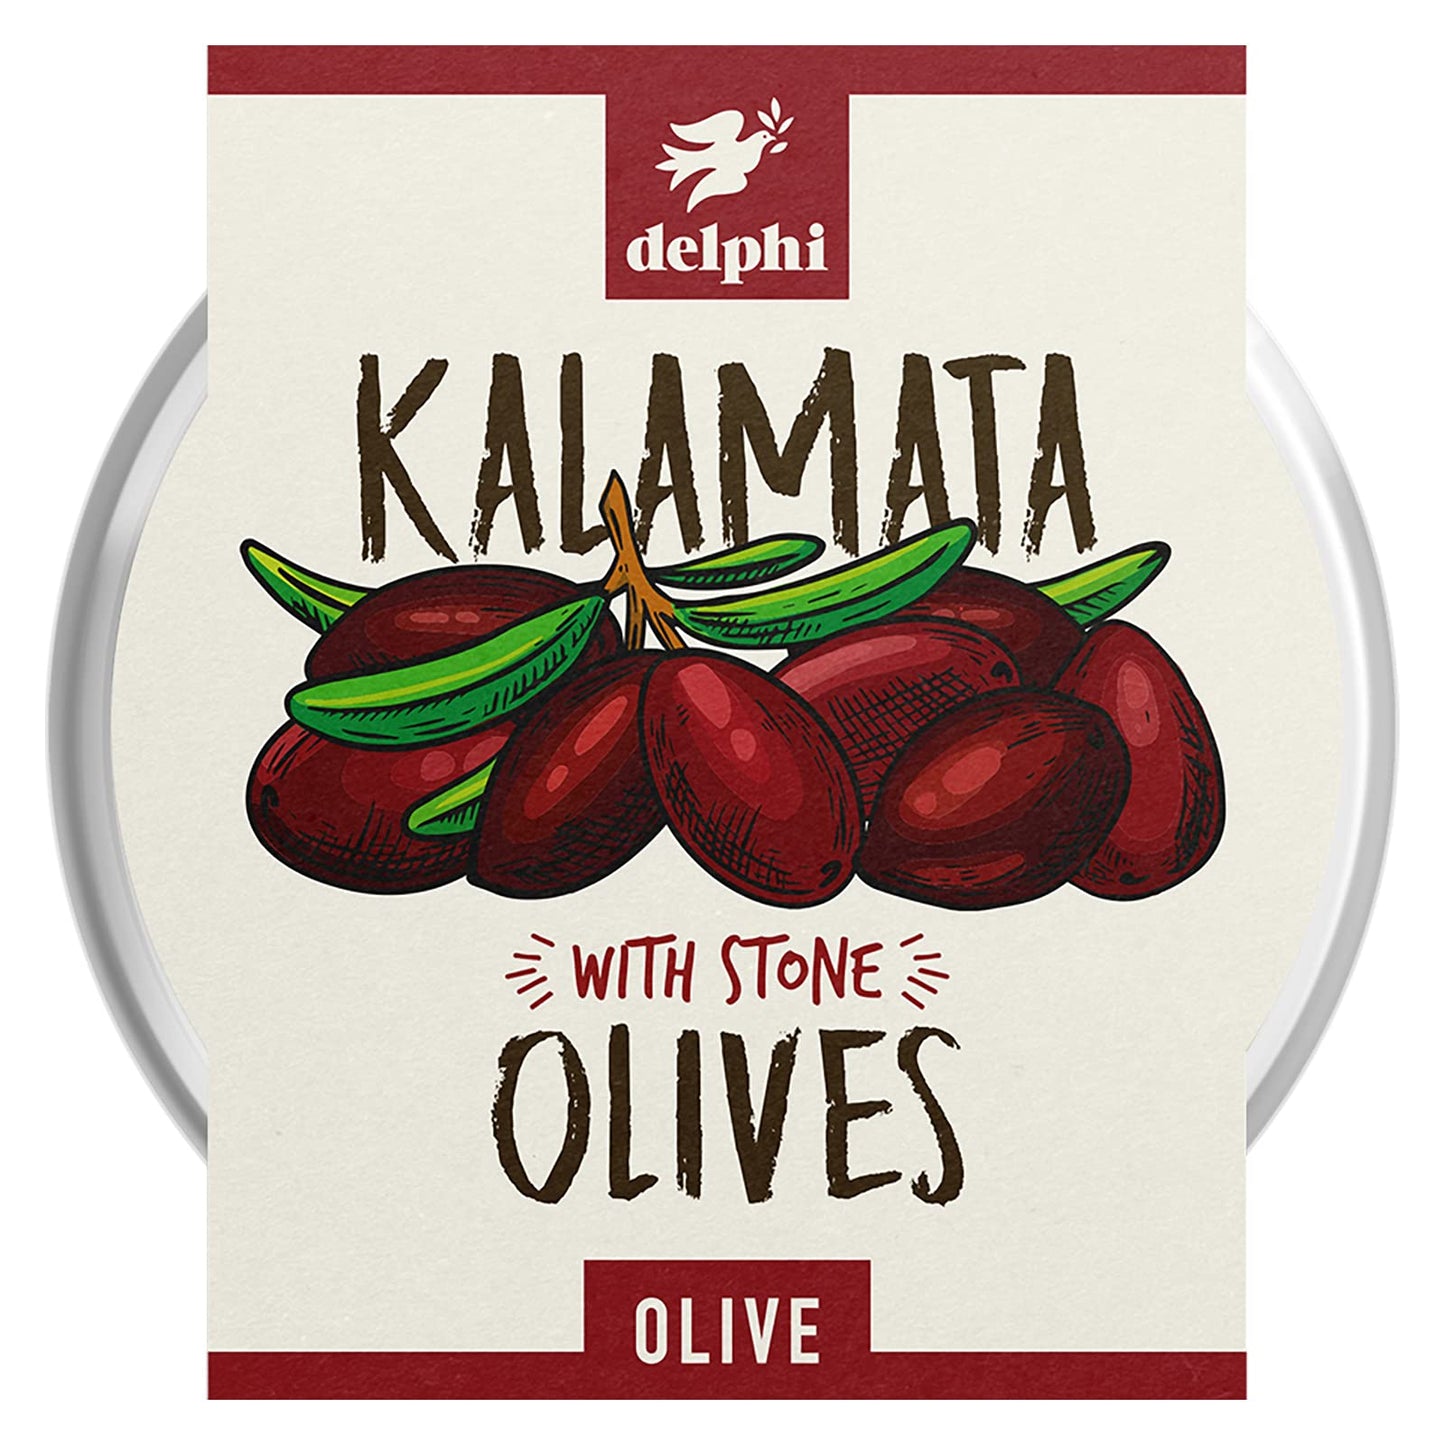 Kalamata Olives with stone 30043B